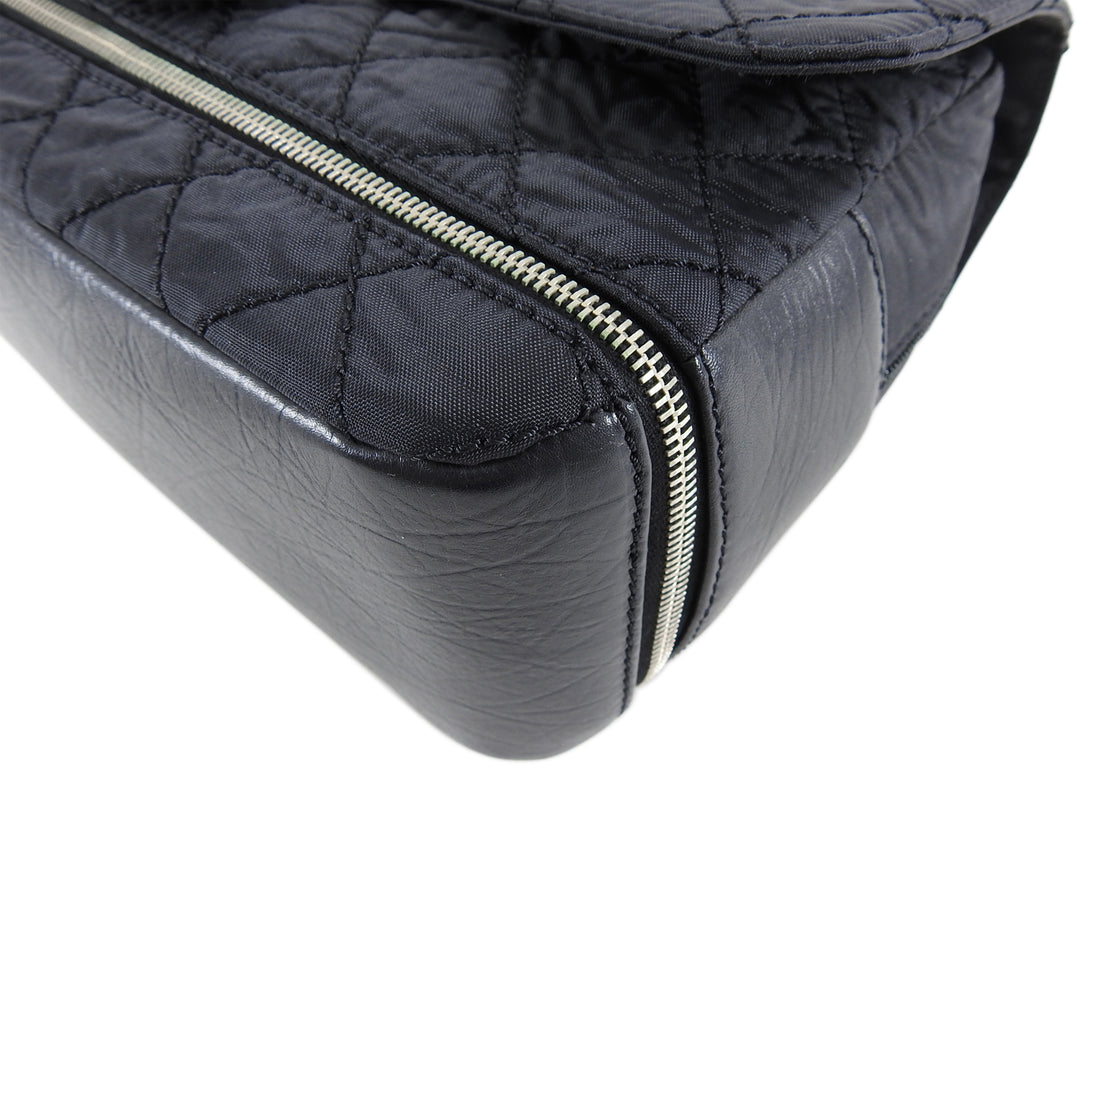 Chanel Jumbo Expandable Black Nylon Quilt Flap Bag 